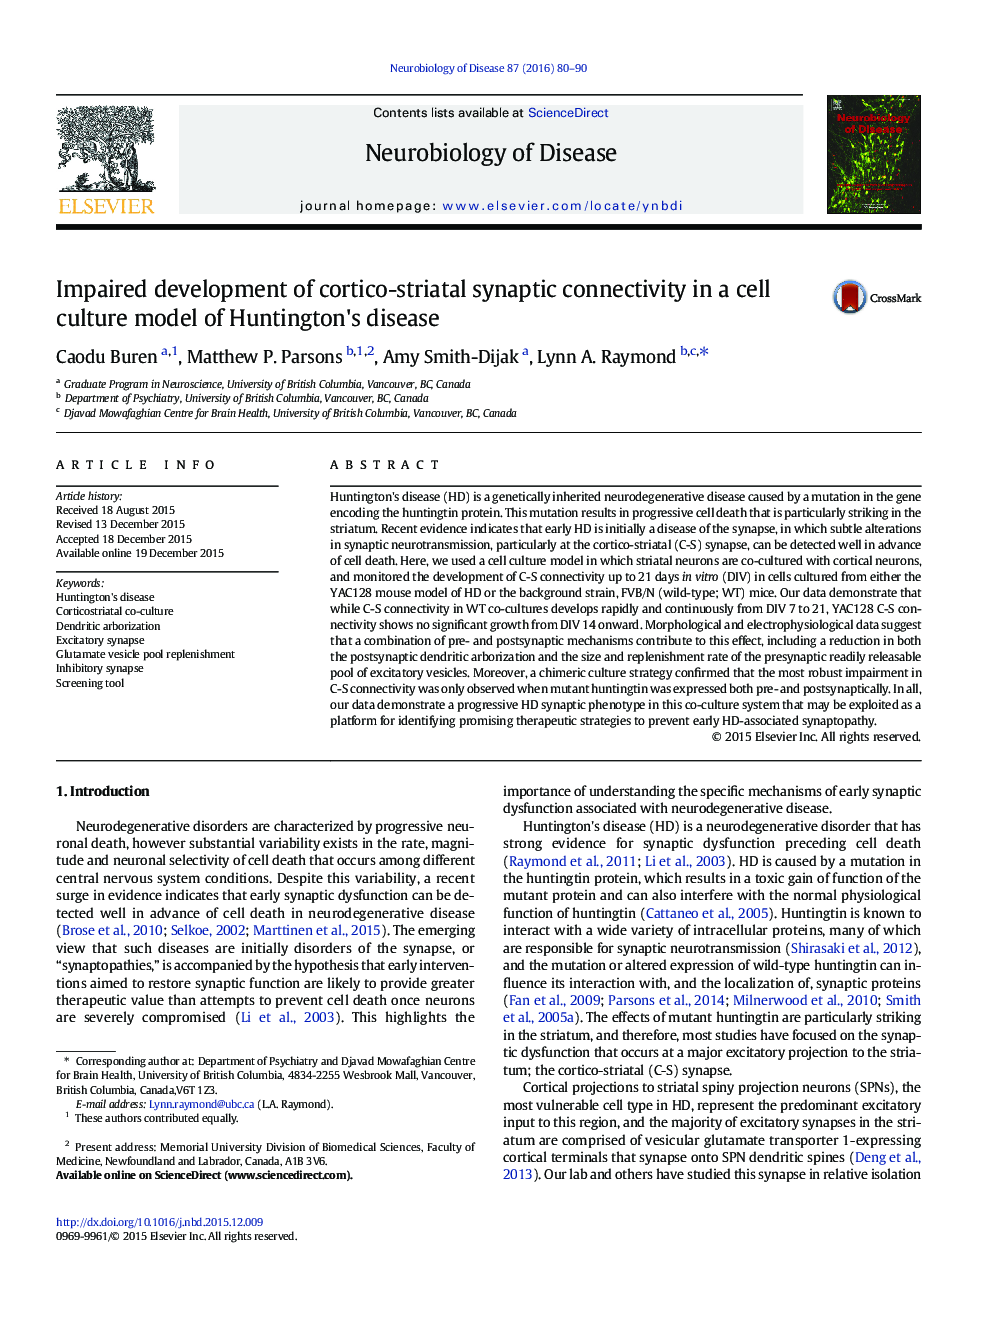 اختلال رشد اتصال سیناپسی کورتیکواستروییت در یک مدل کشت سلولی بیماری هانتینگتون 